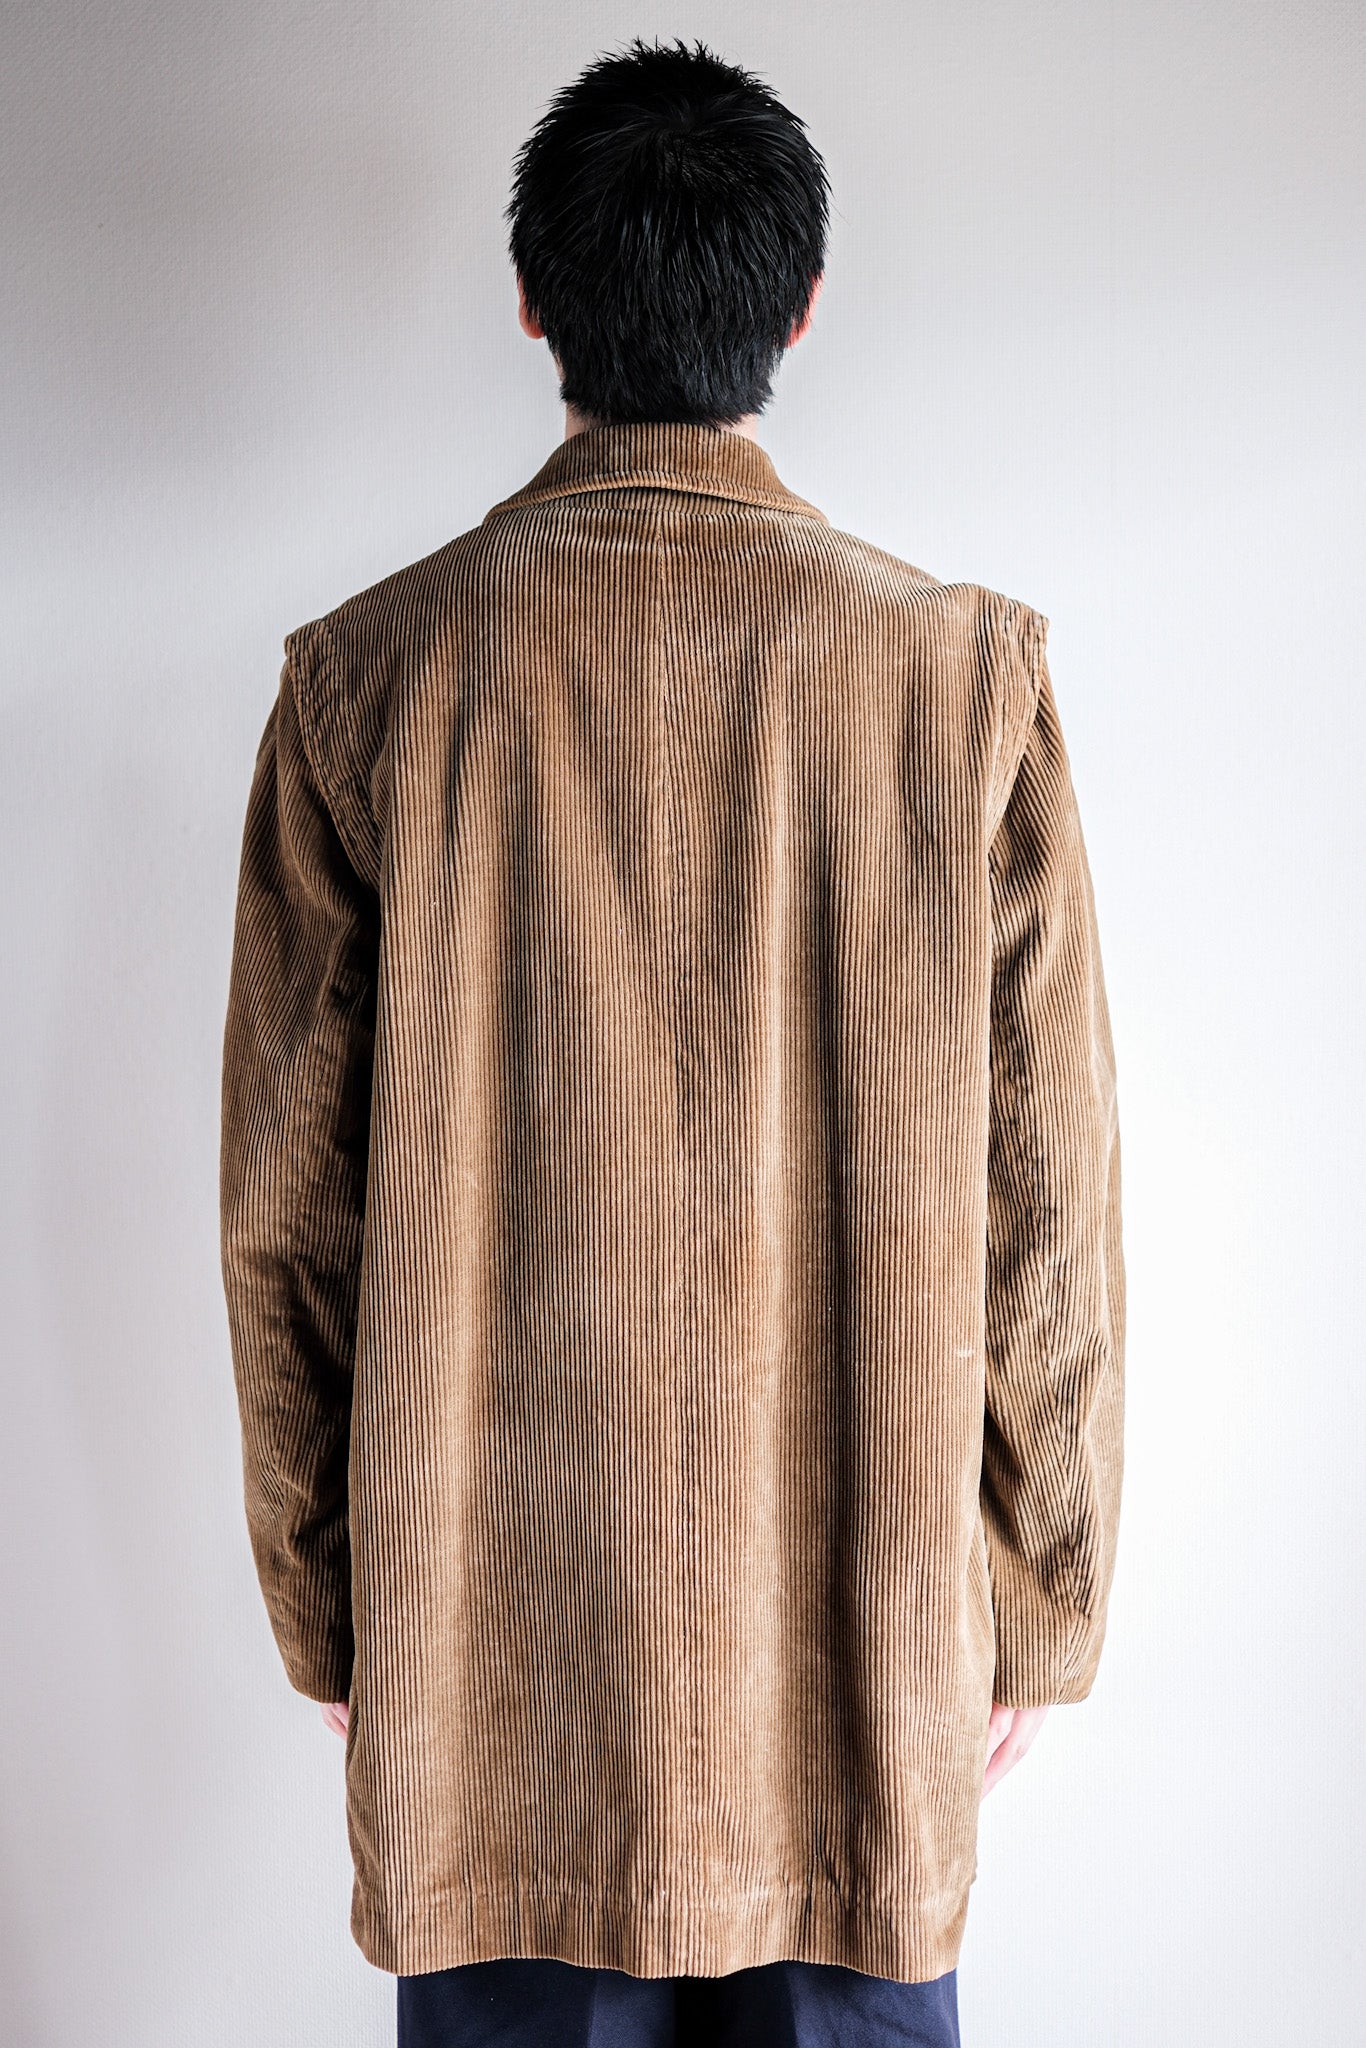 [〜80年代]舊逆變器棕色燈芯絨夾克與中國皮帶